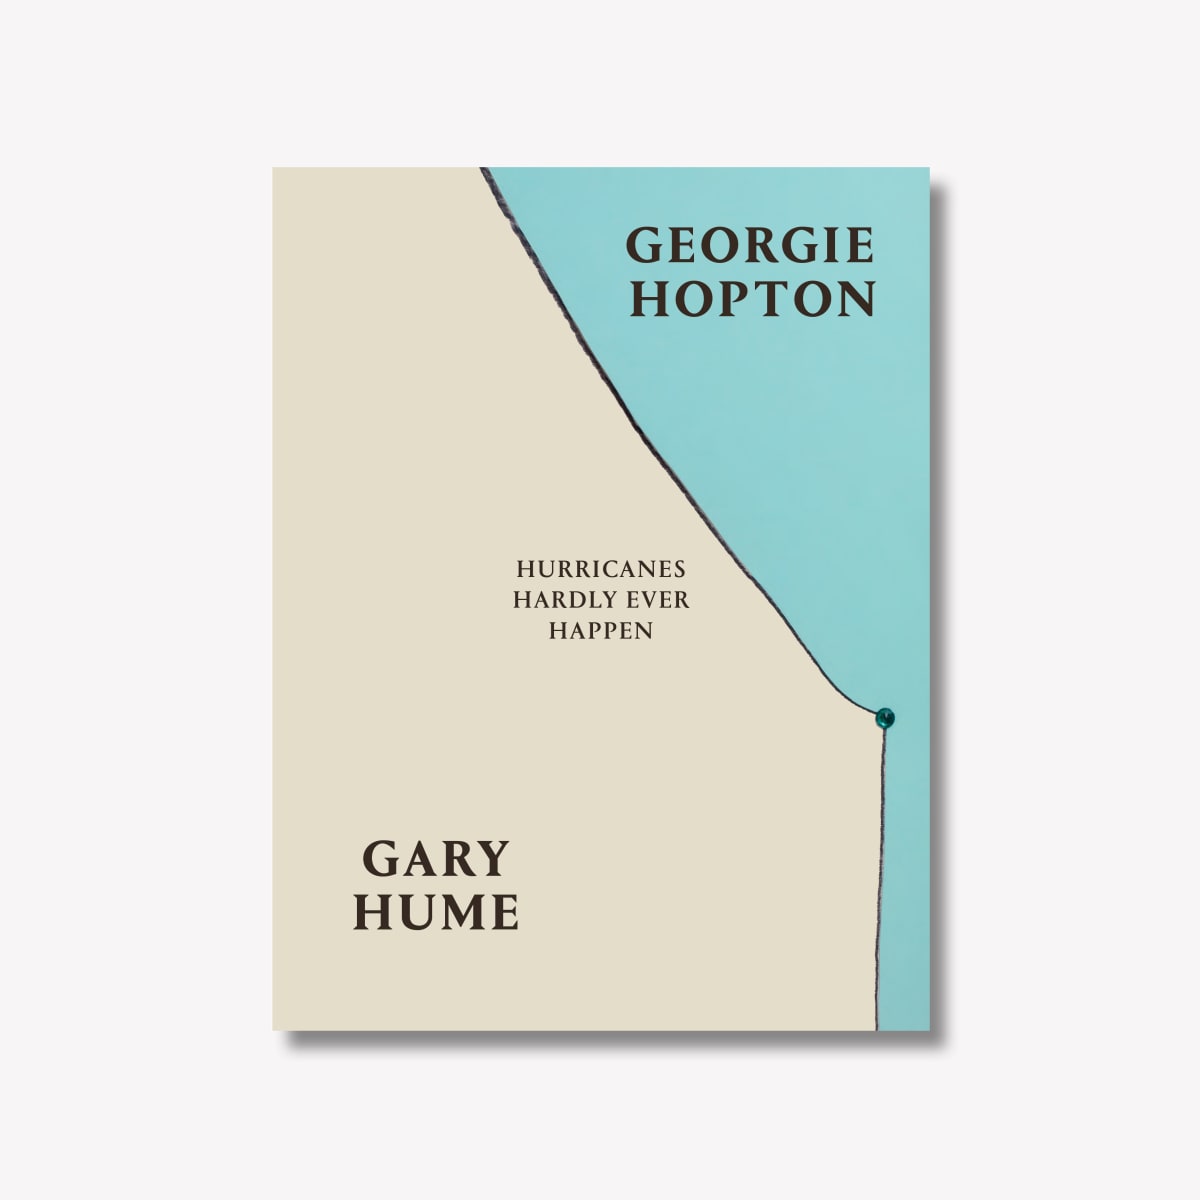 Georgie Hopton and Gary Hume